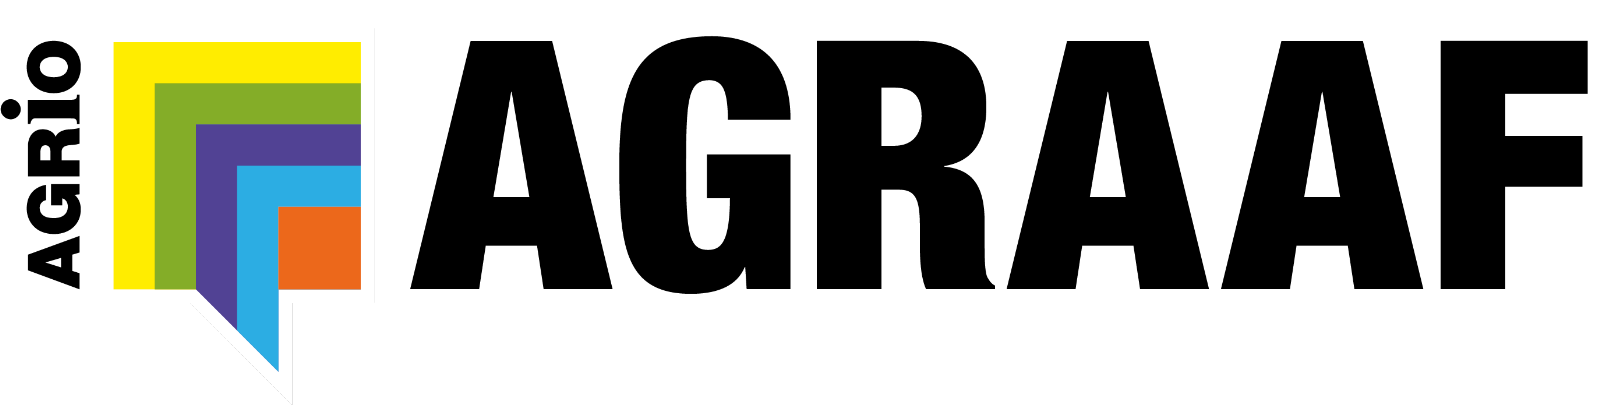 Agraaf logo